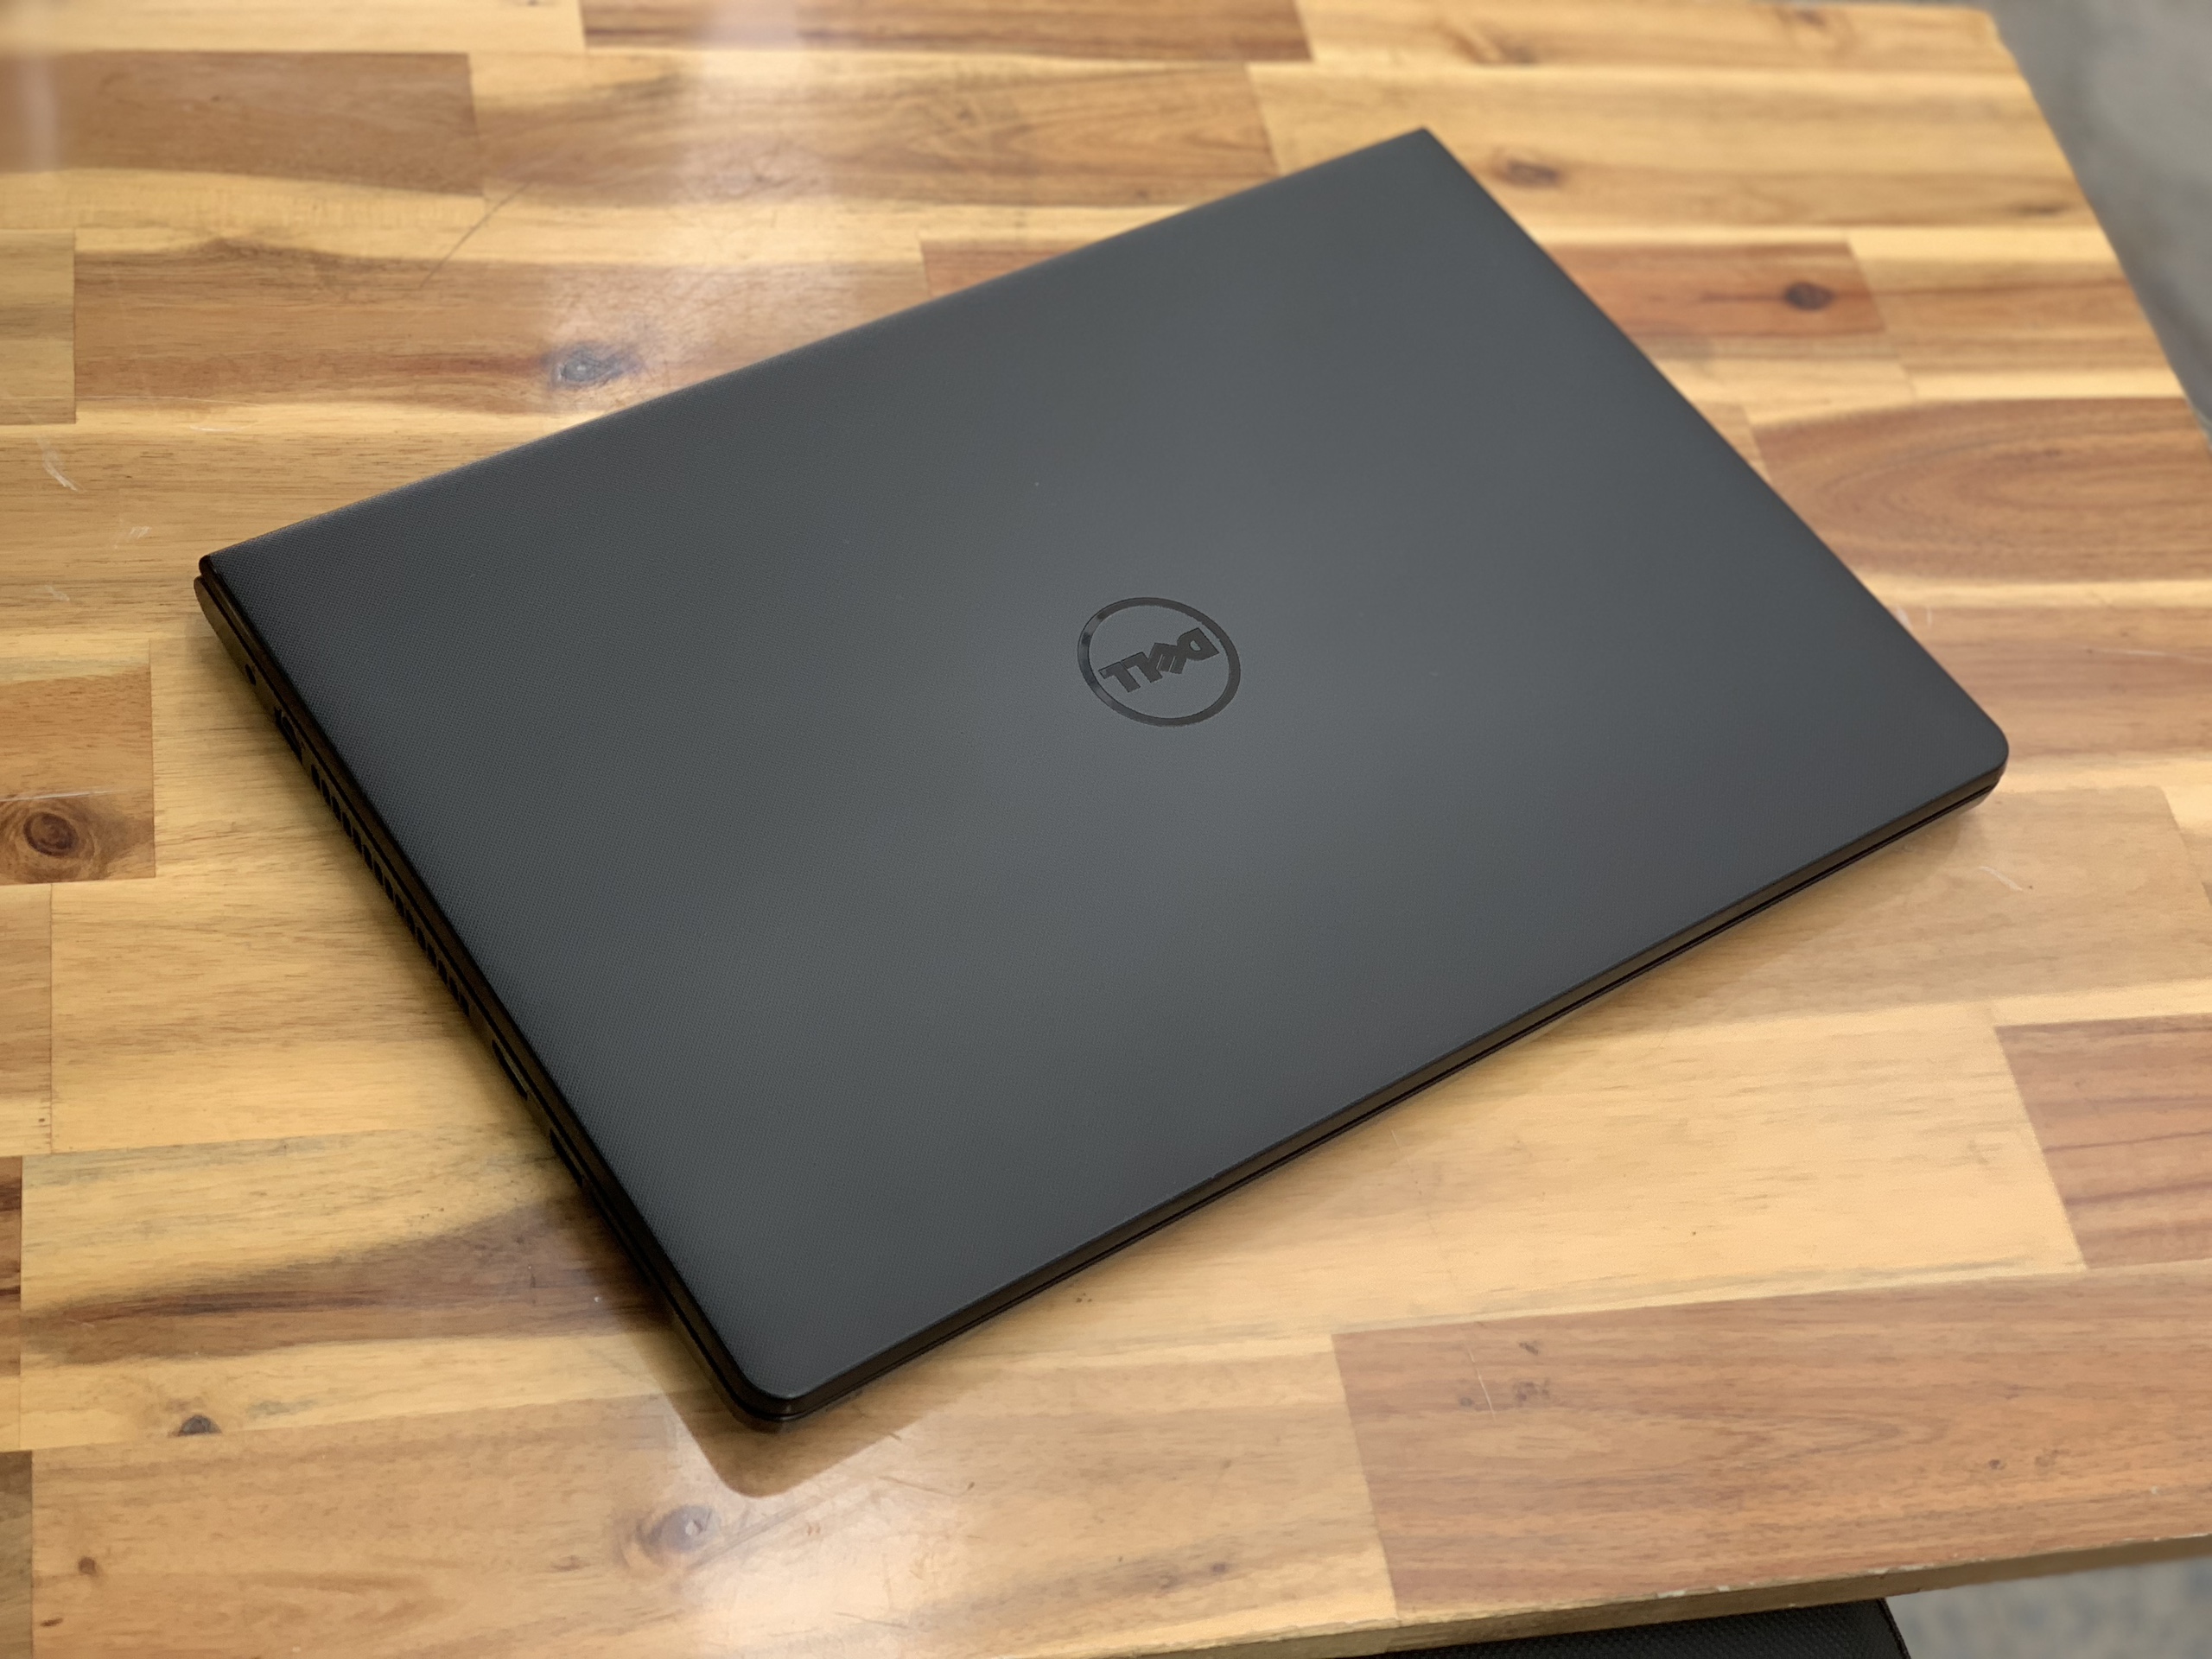 Laptop Dell Inspiron 3542, i3 4005U 4G 500G đẹp zin 100% Giá rẻ2